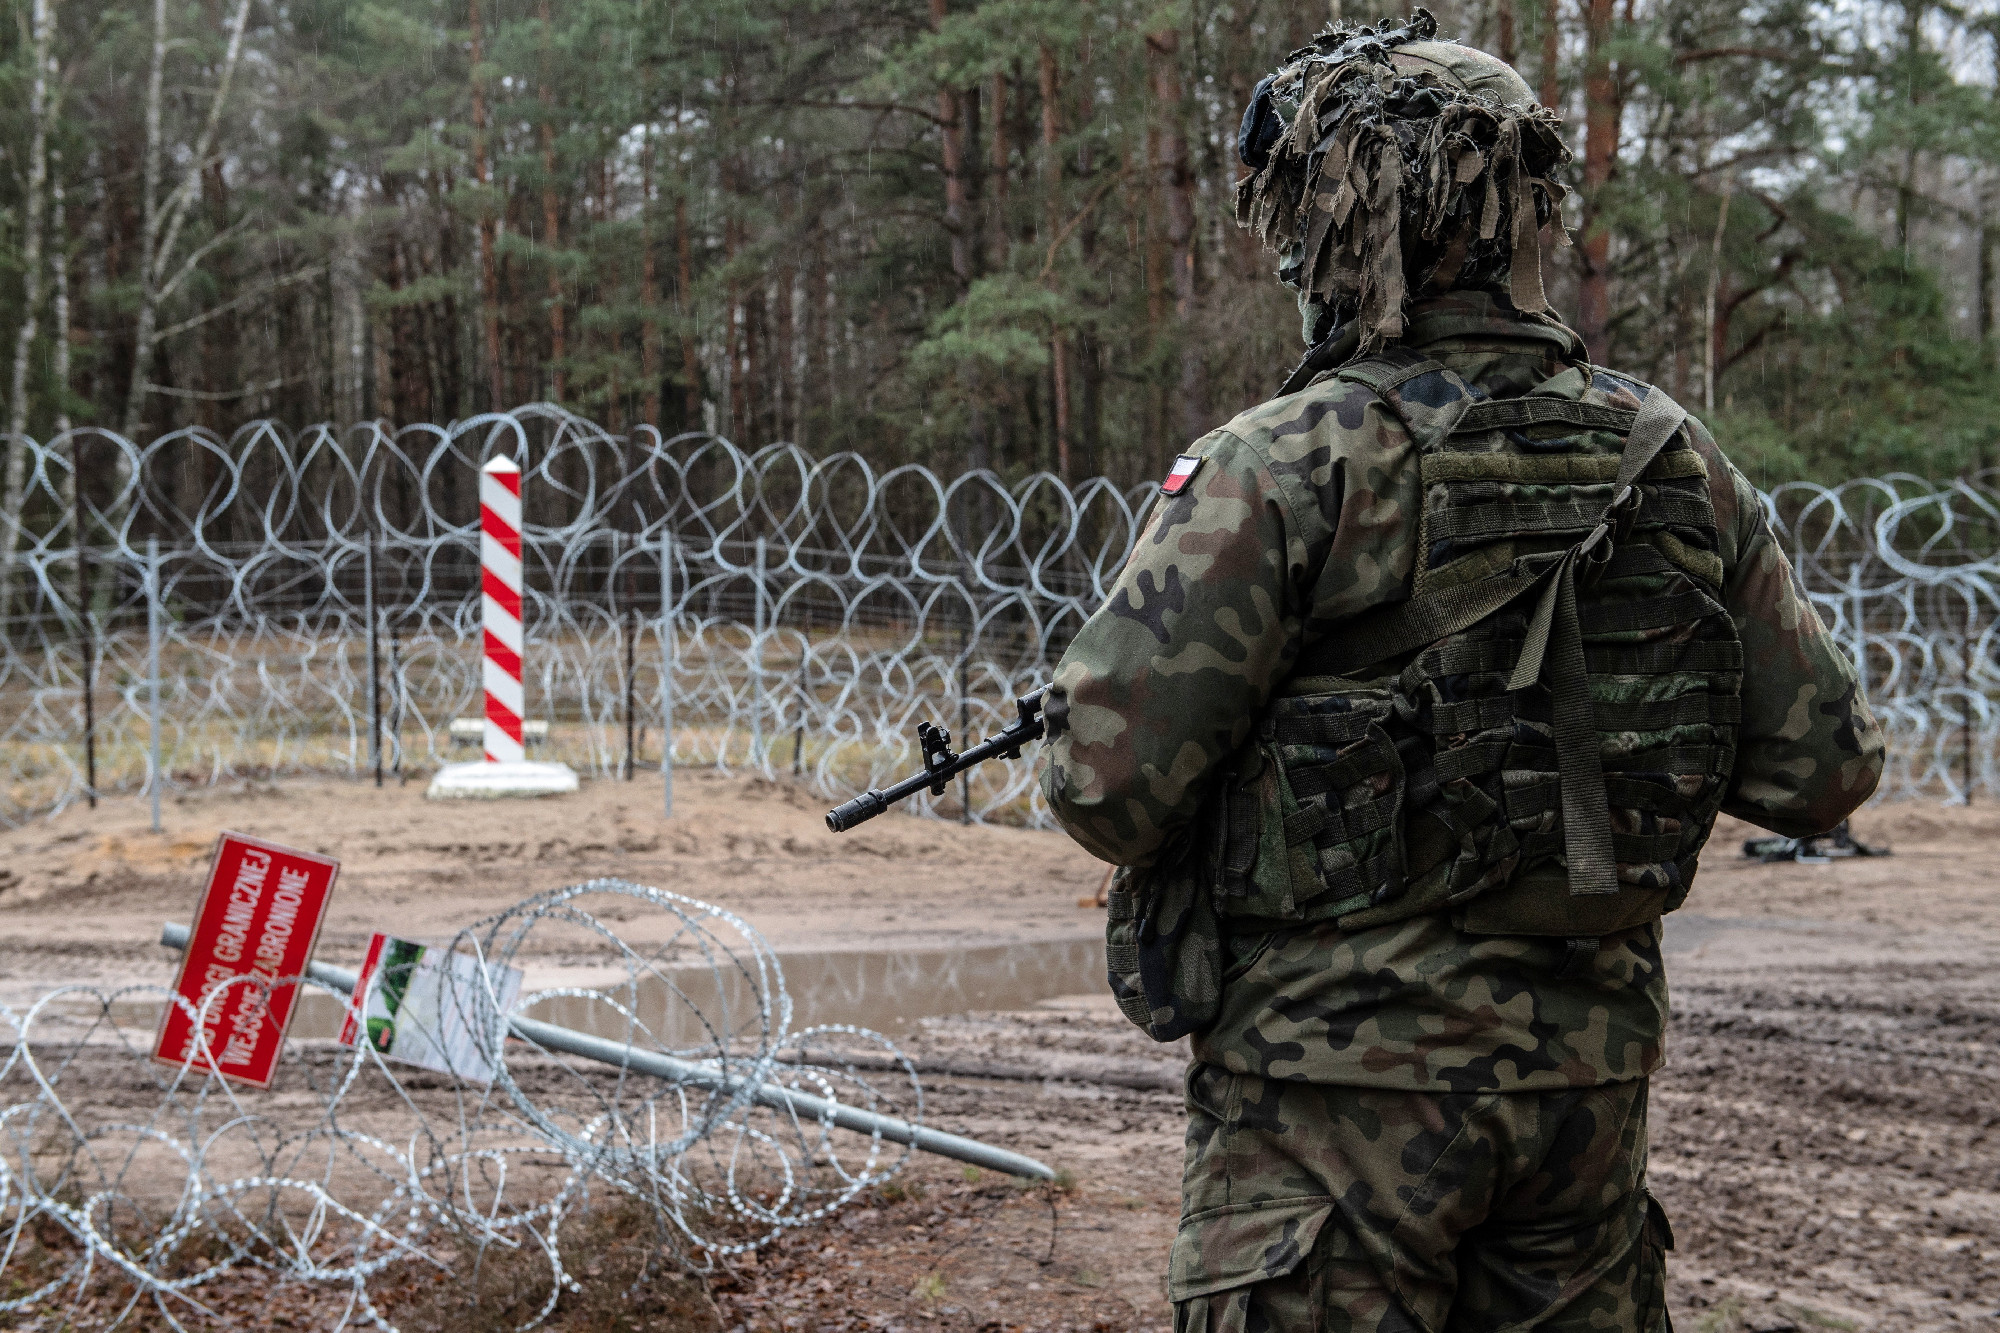 Áttörési kísérlet most nem volt, de továbbra is feszült a helyzet a lengyel határnál